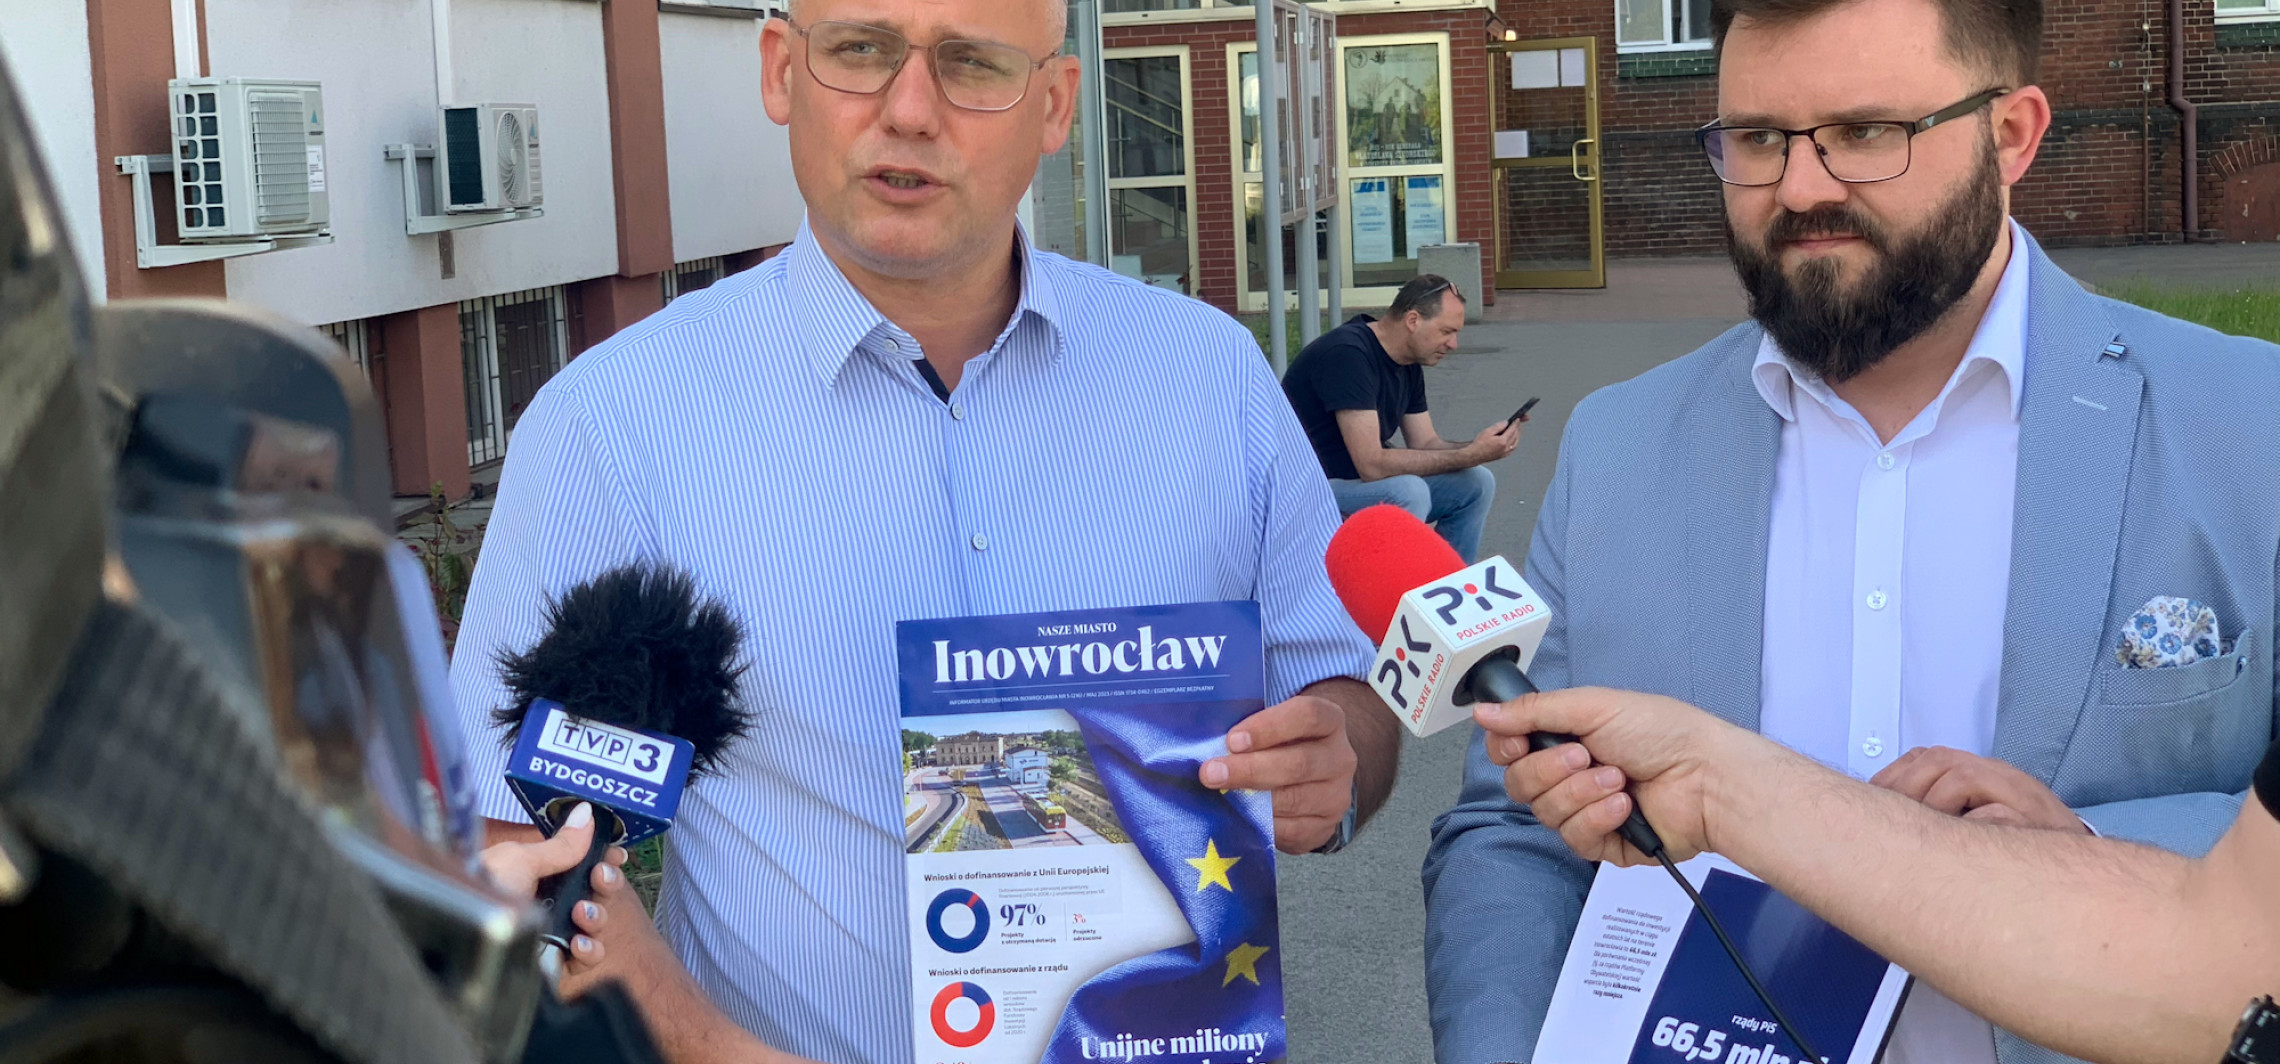 Inowrocław - Ireneusz Stachowiak krytykuje ratuszowy informator